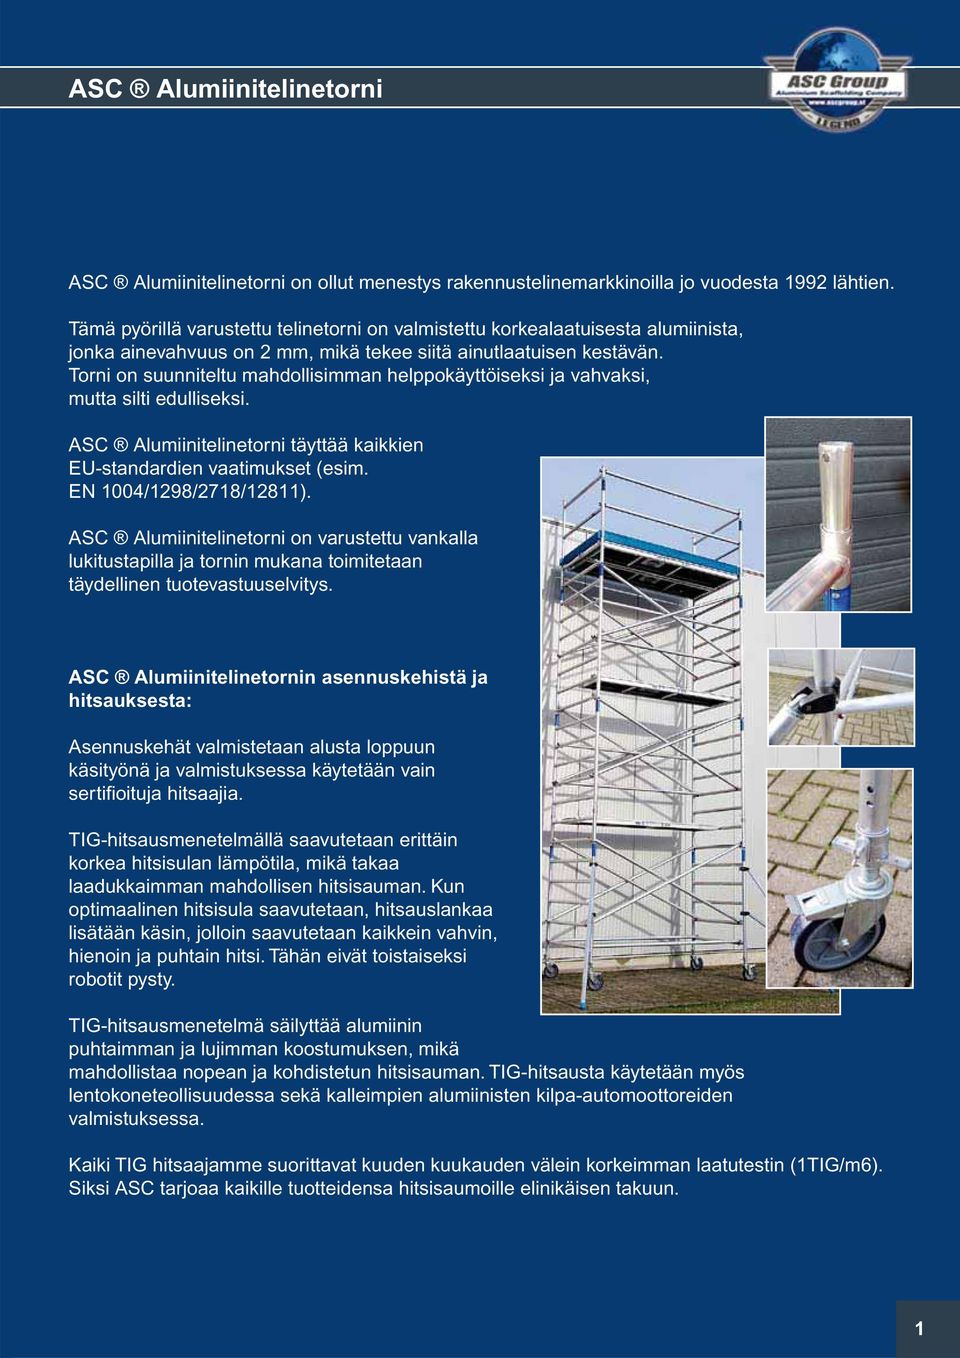 Torni on suunniteltu mahdollisimman helppokäyttöiseksi ja vahvaksi, mutta silti edulliseksi. ASC Alumiinitelinetorni täyttää kaikkien EU-standardien vaatimukset (esim. EN 1004/1298/2718/12811).